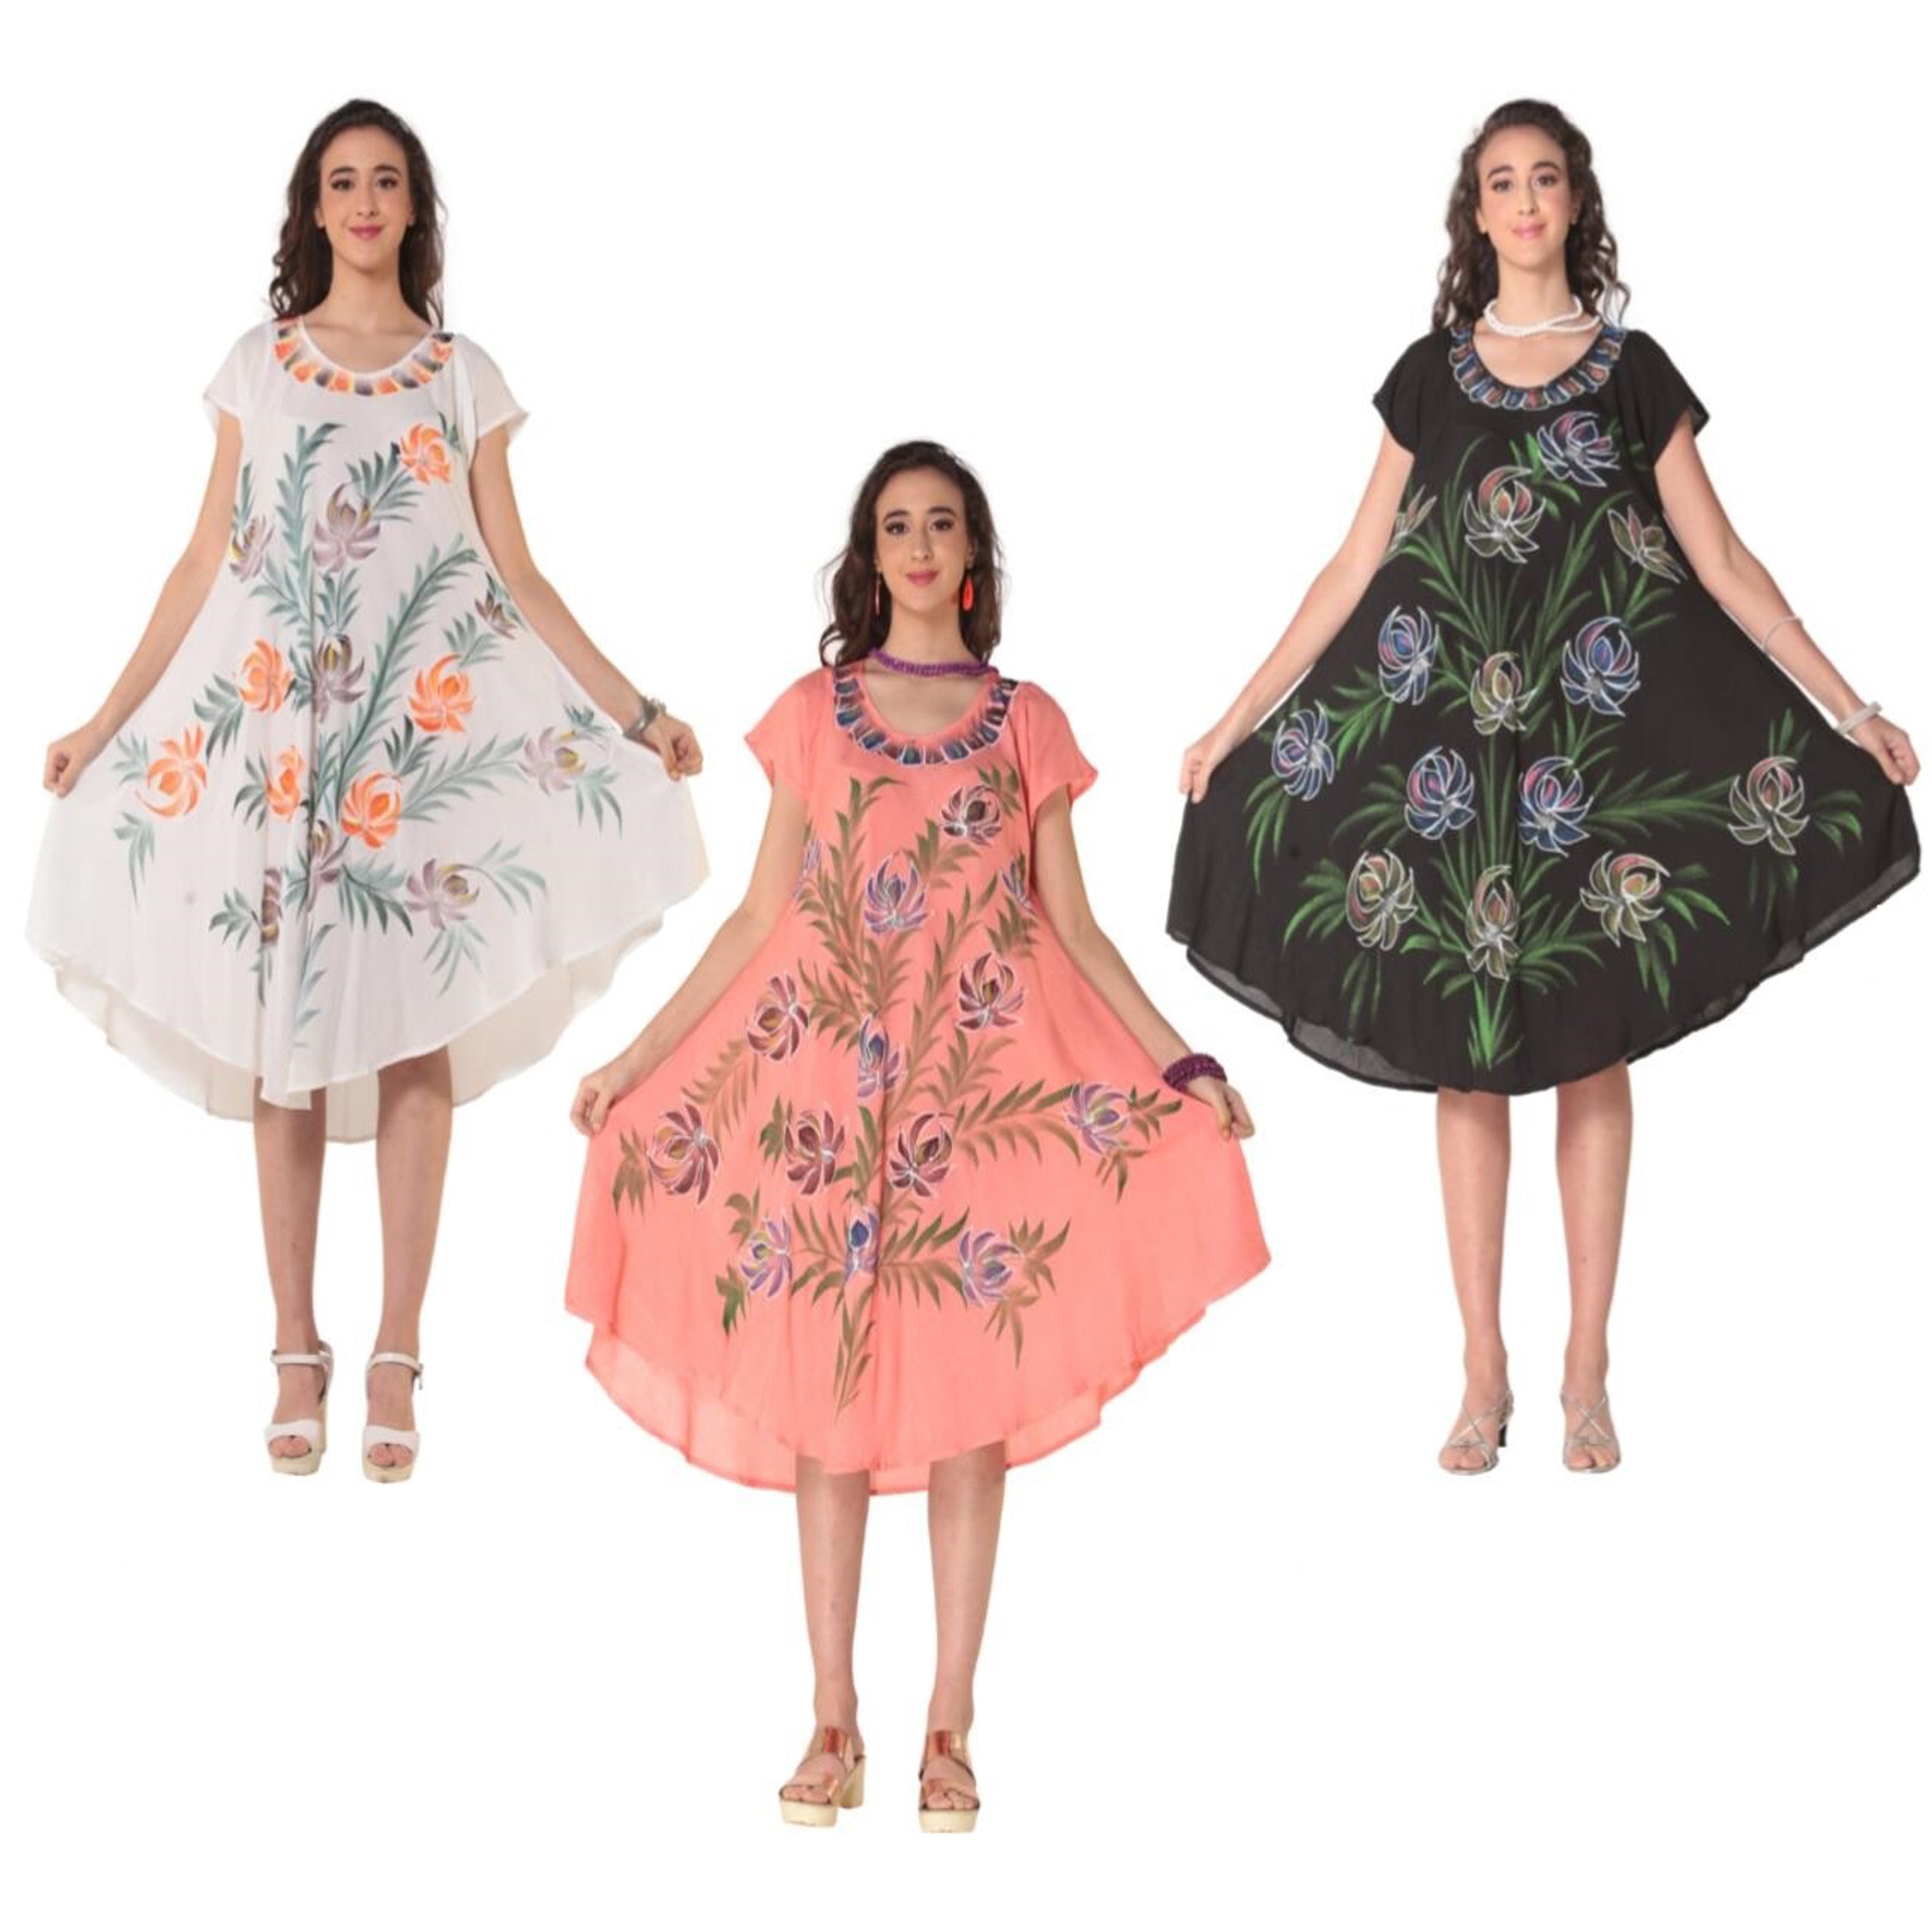 Wholesale Women's Dresses Rayon Crape Cap Sleeve Dress-Tie Dye Brush PAINT 12-36-Case S-XL 3 Colors 